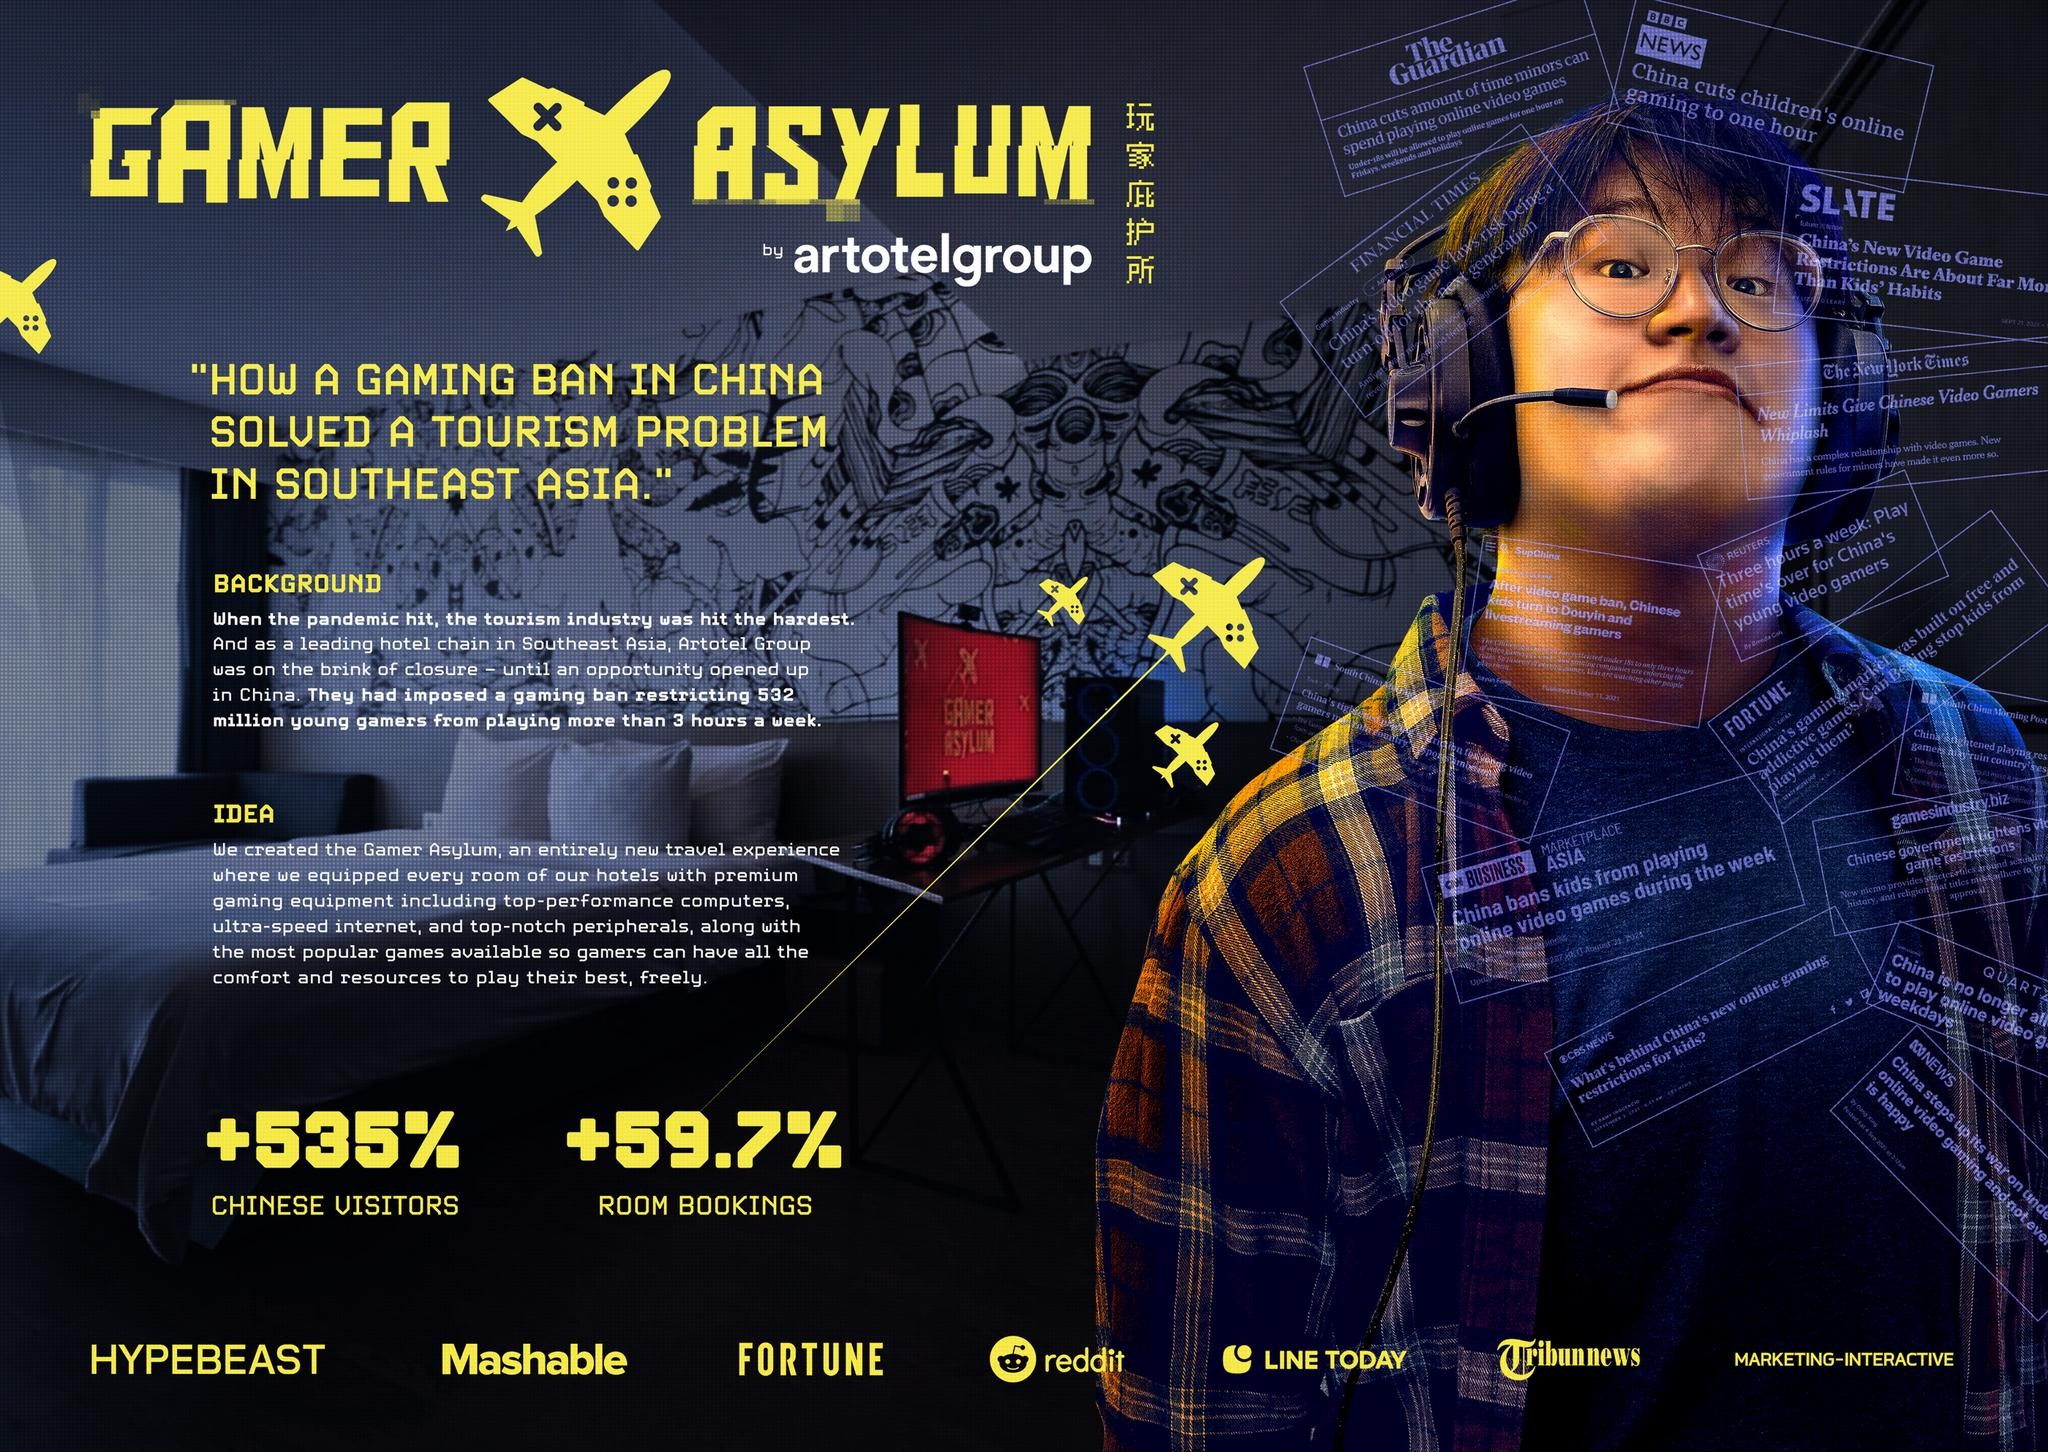 Gamer Asylum